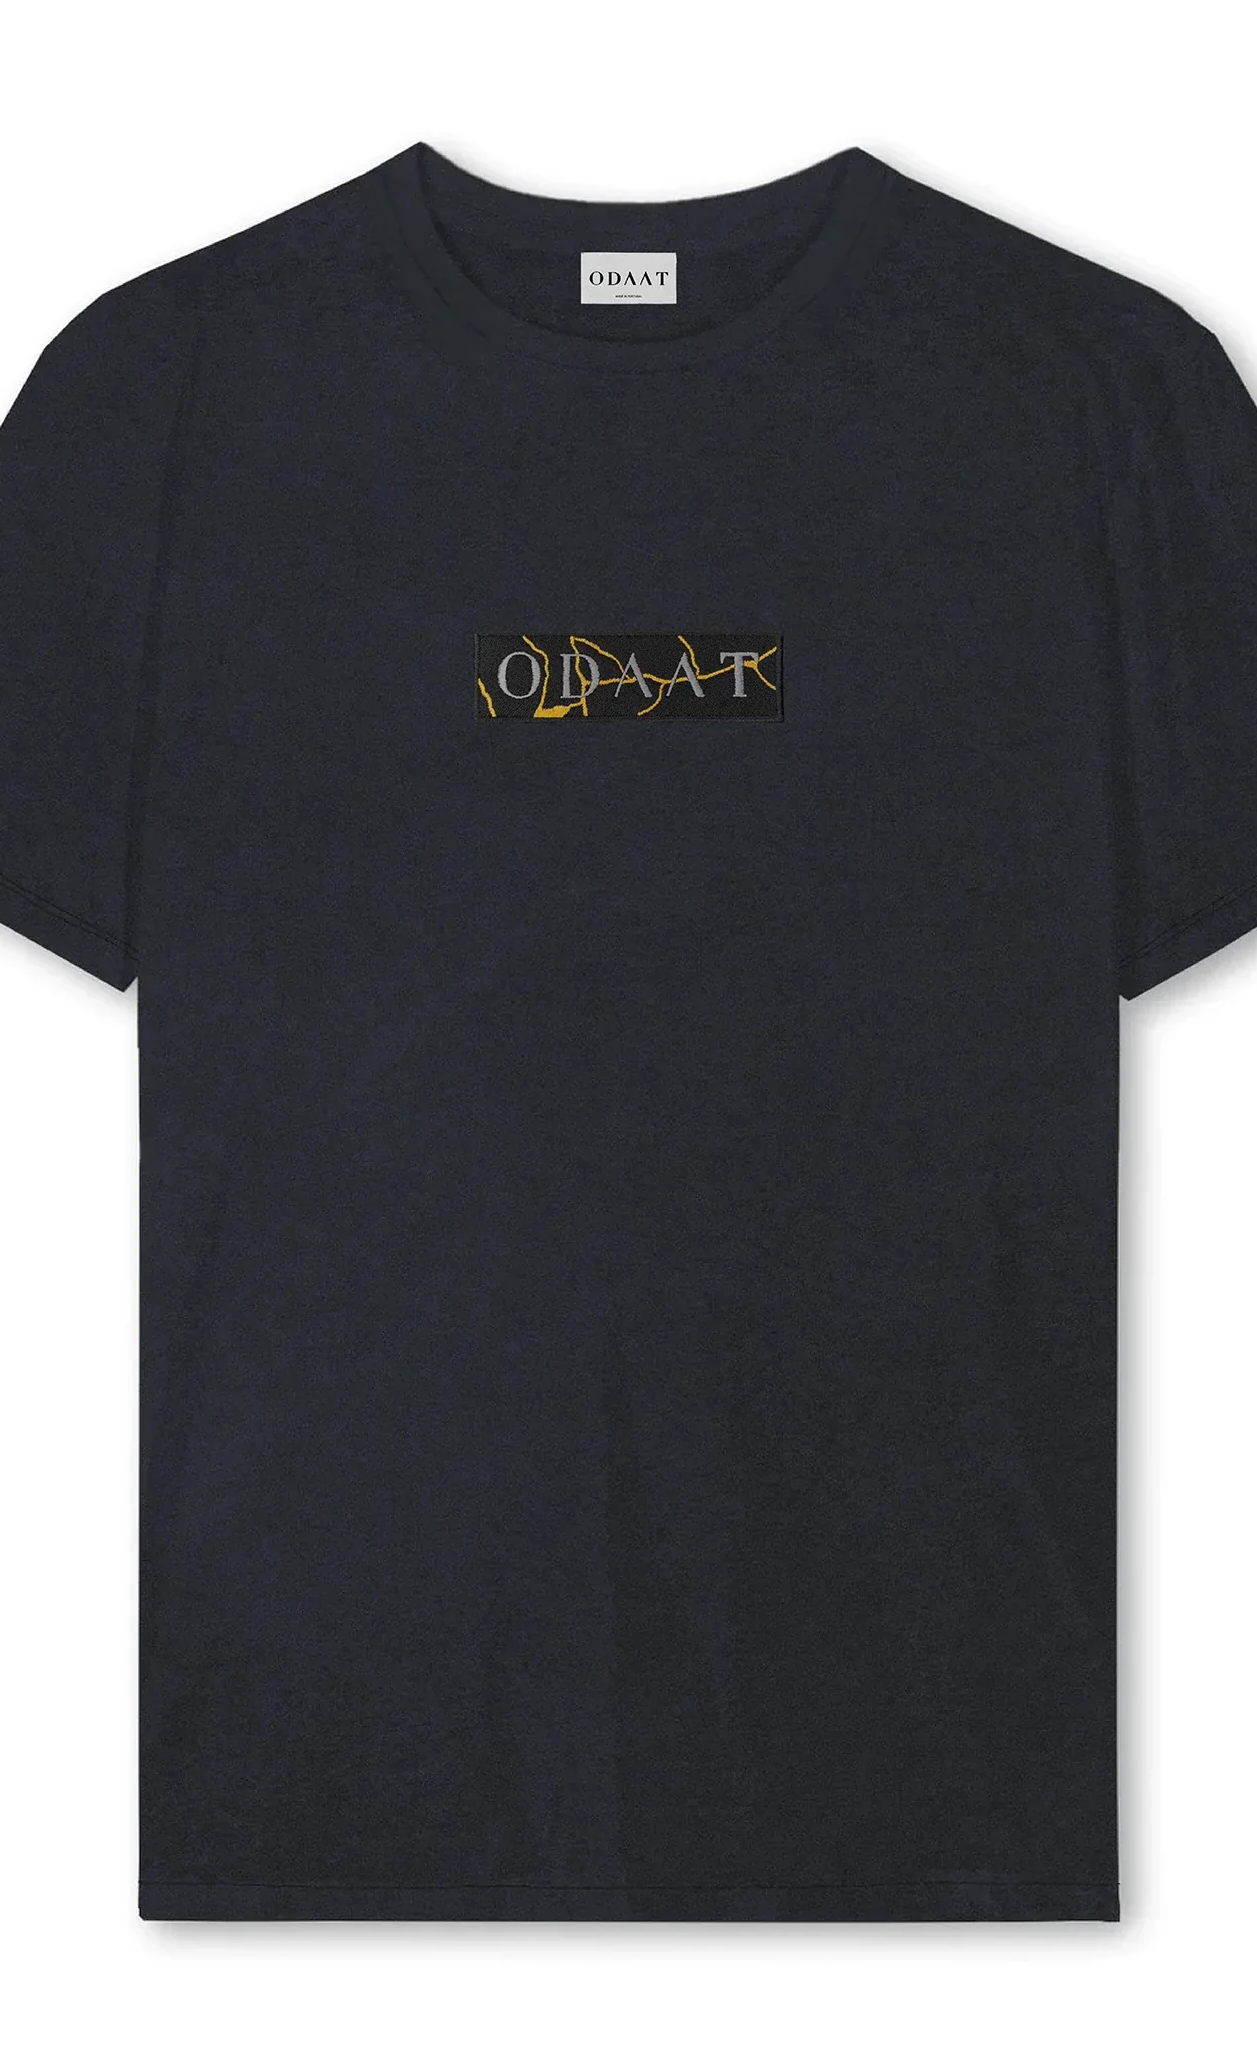 ODAAT Apparel, Golden Mend Kintsugi T-Shirt, Vintage Black